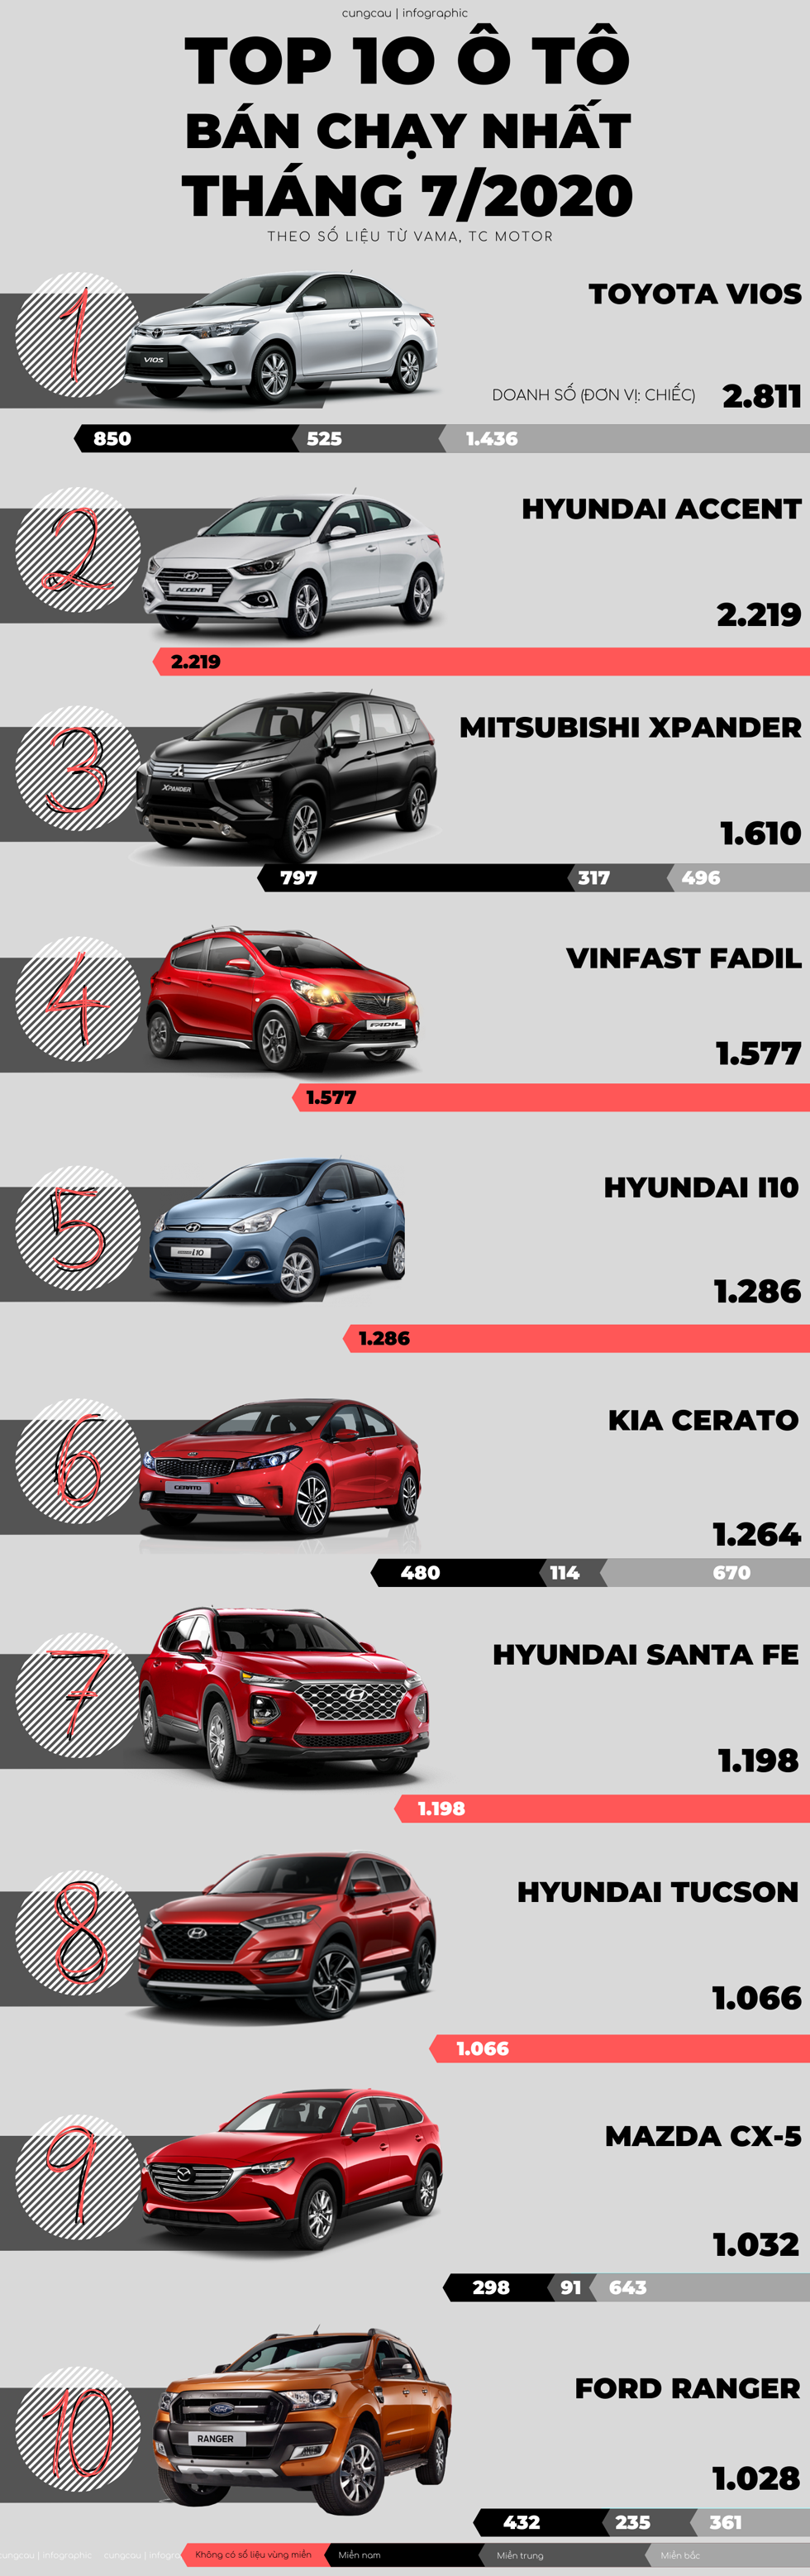 Top 10 ô tô bán chạy nhất tháng 7/2020: VinFast Fadil giữ vững phong độ, Honda City mất hút